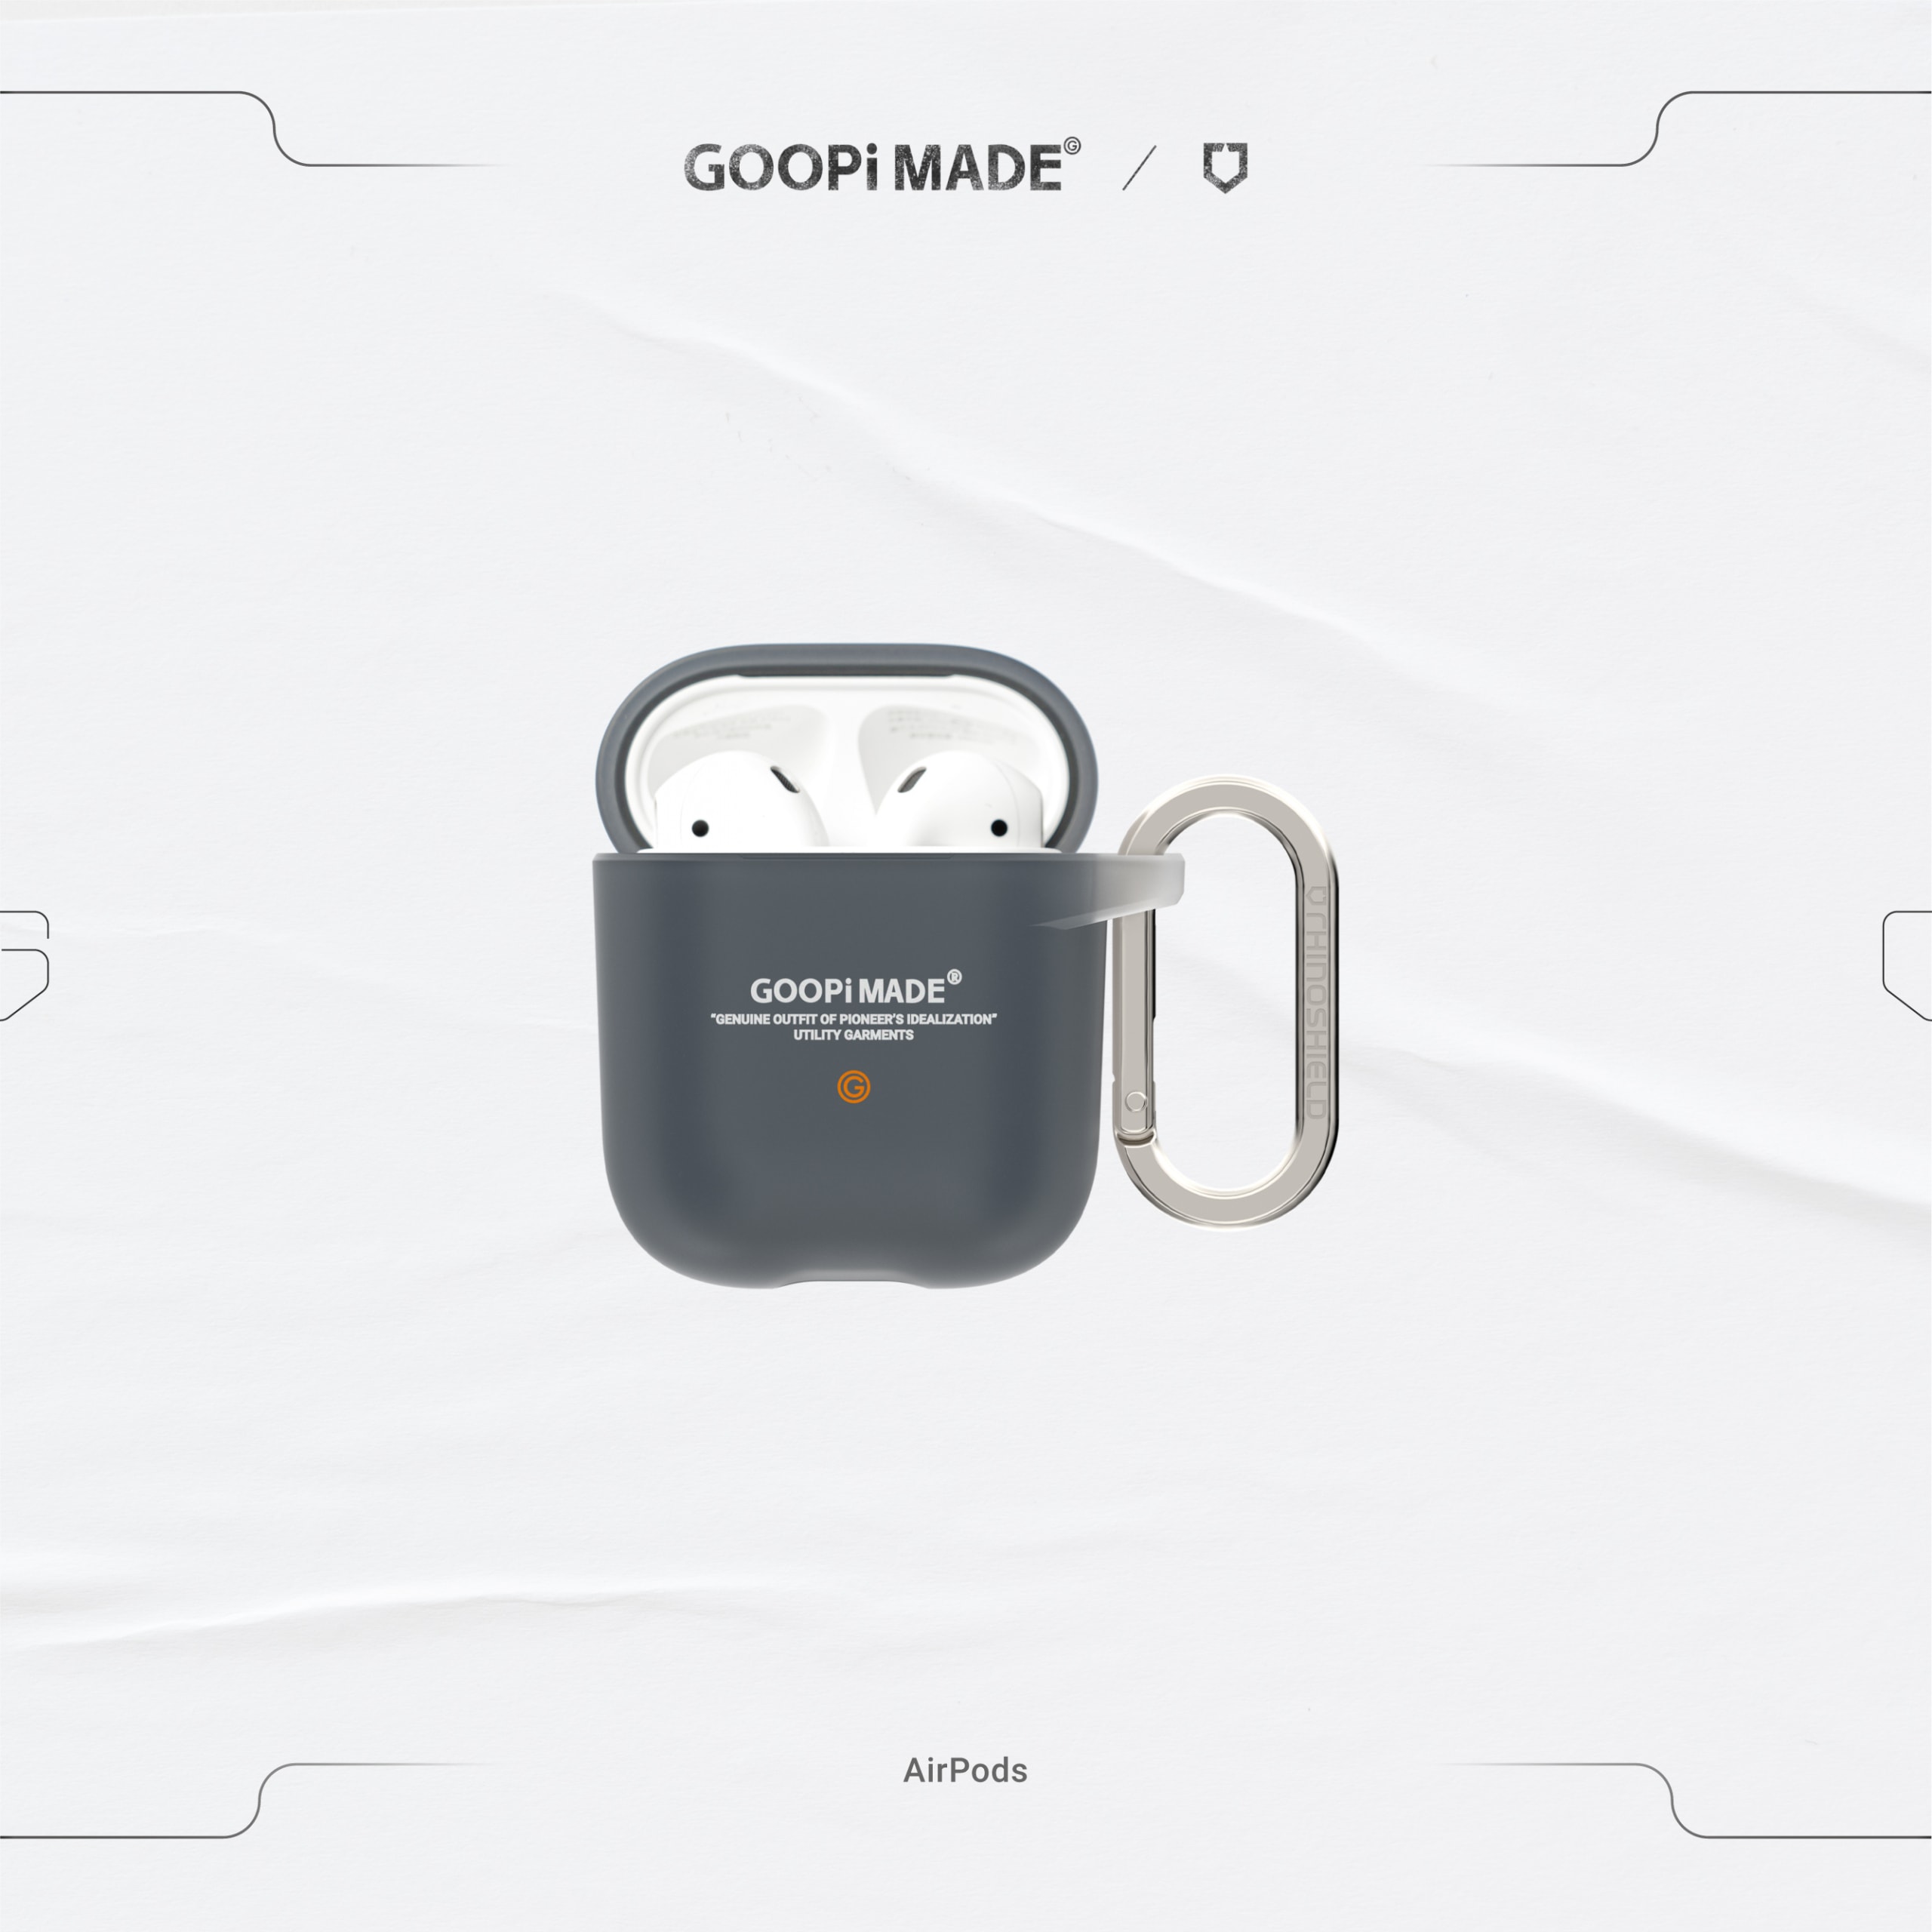 GOOPiMADE 攜手 RhinoShield 推出全新 iPhone、AirPods 聯名保護殼